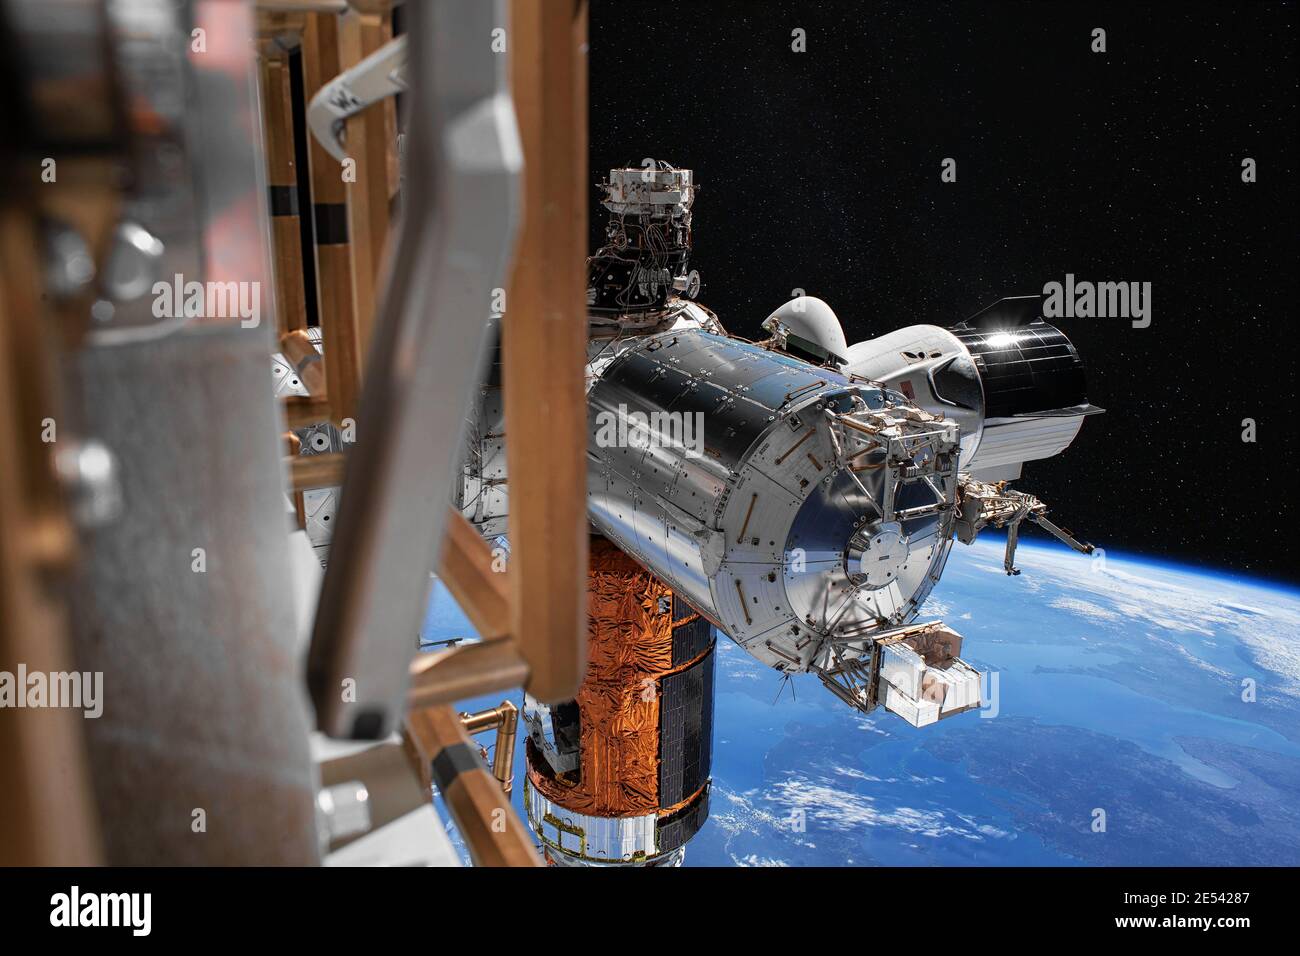 Le vaisseau spatial SpaceX Crew Dragon est amarré à la Station spatiale internationale. Éléments de cette image fournis par la NASA. Banque D'Images